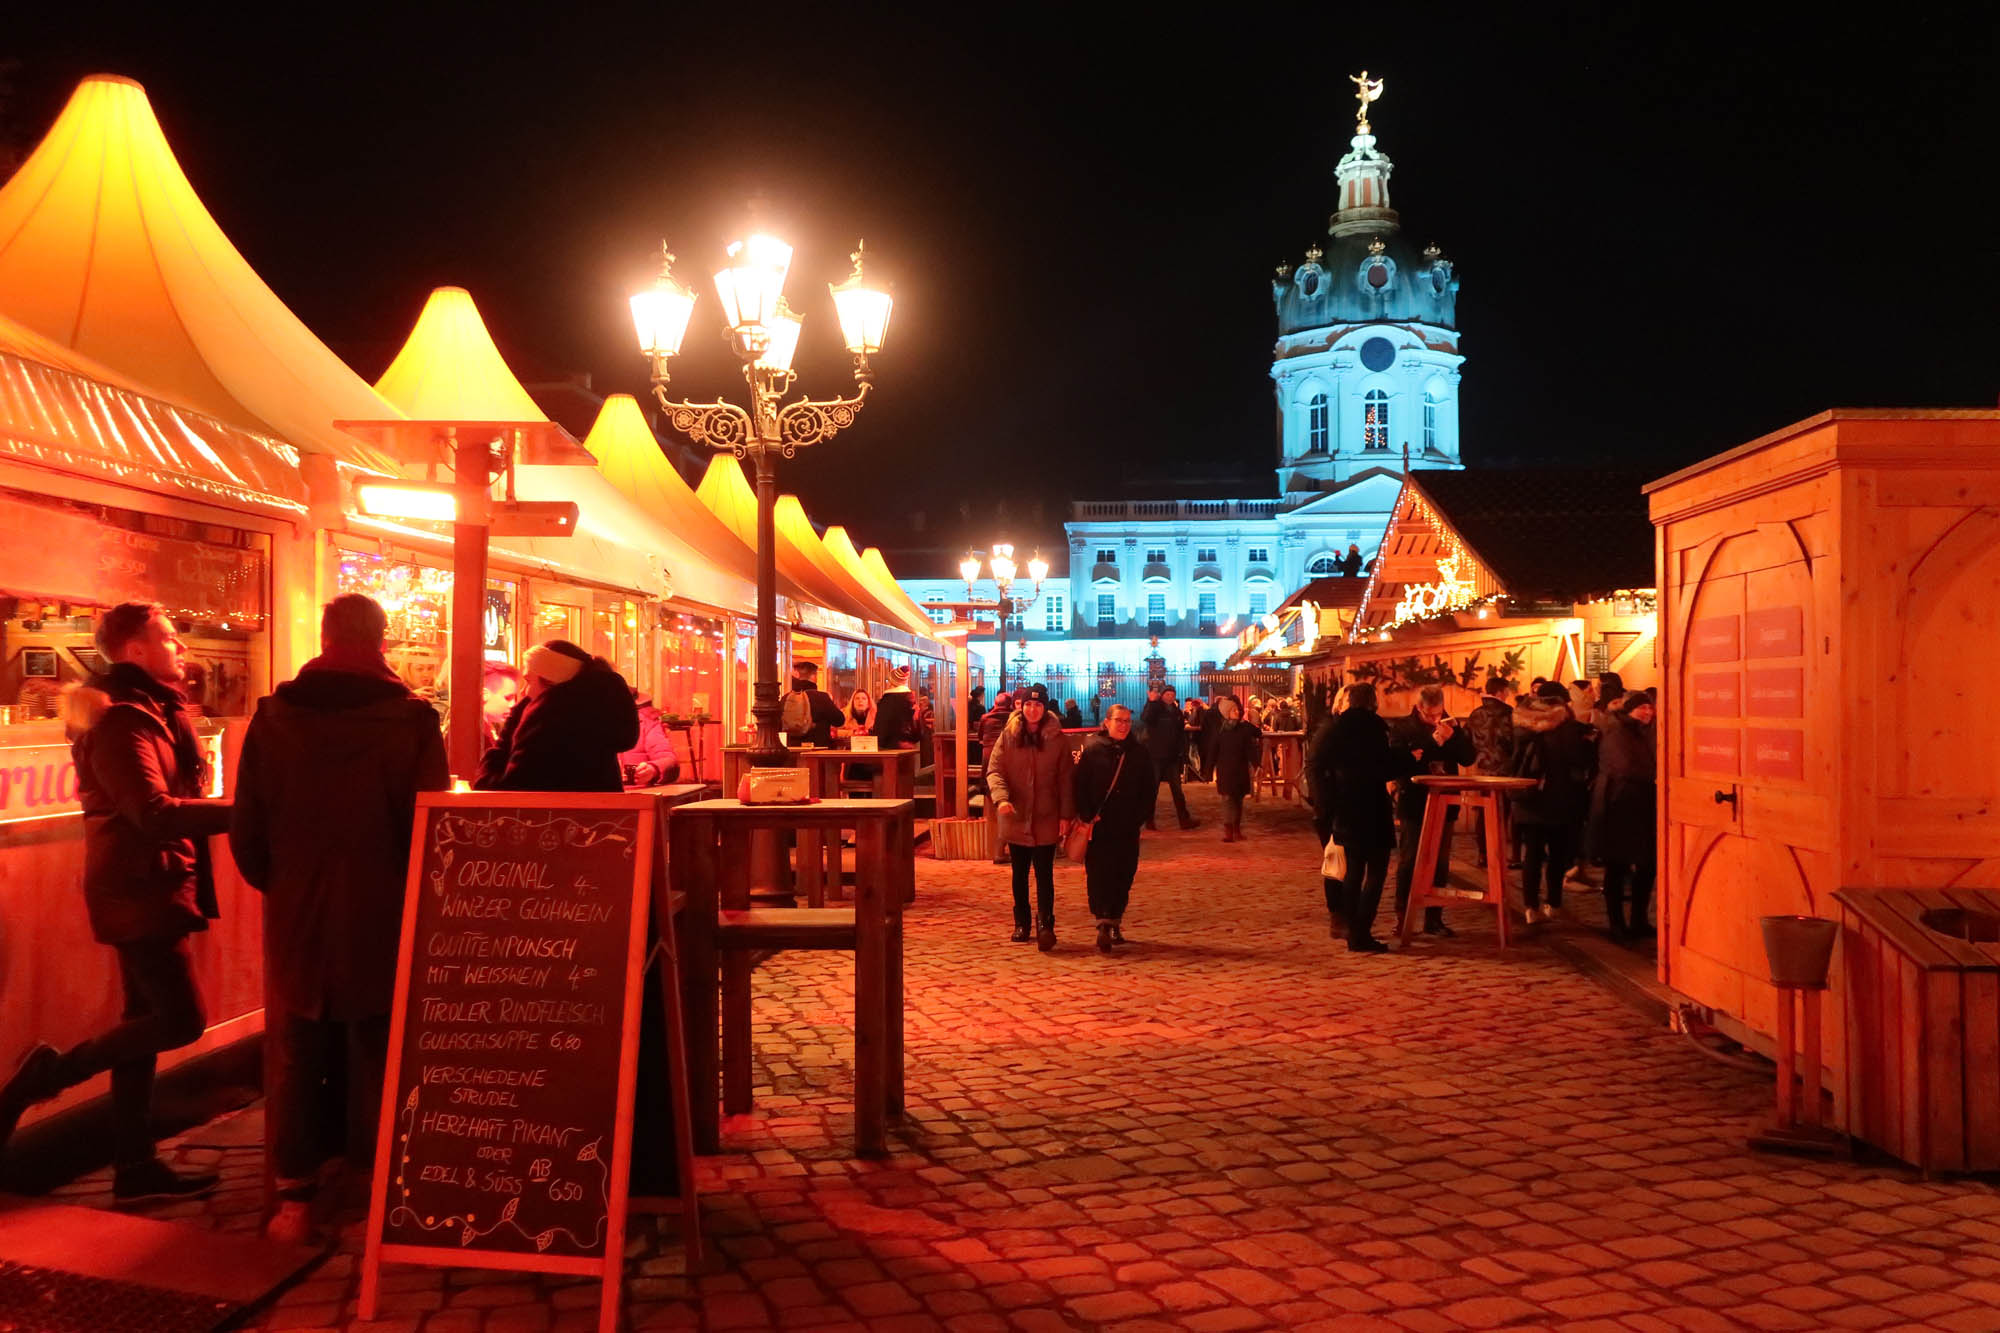 ベルリンのクリスマスマーケット 鮮やかなライトアップが印象的なシャルロッテンブルク宮殿のクリスマスマーケット ドイツ便り